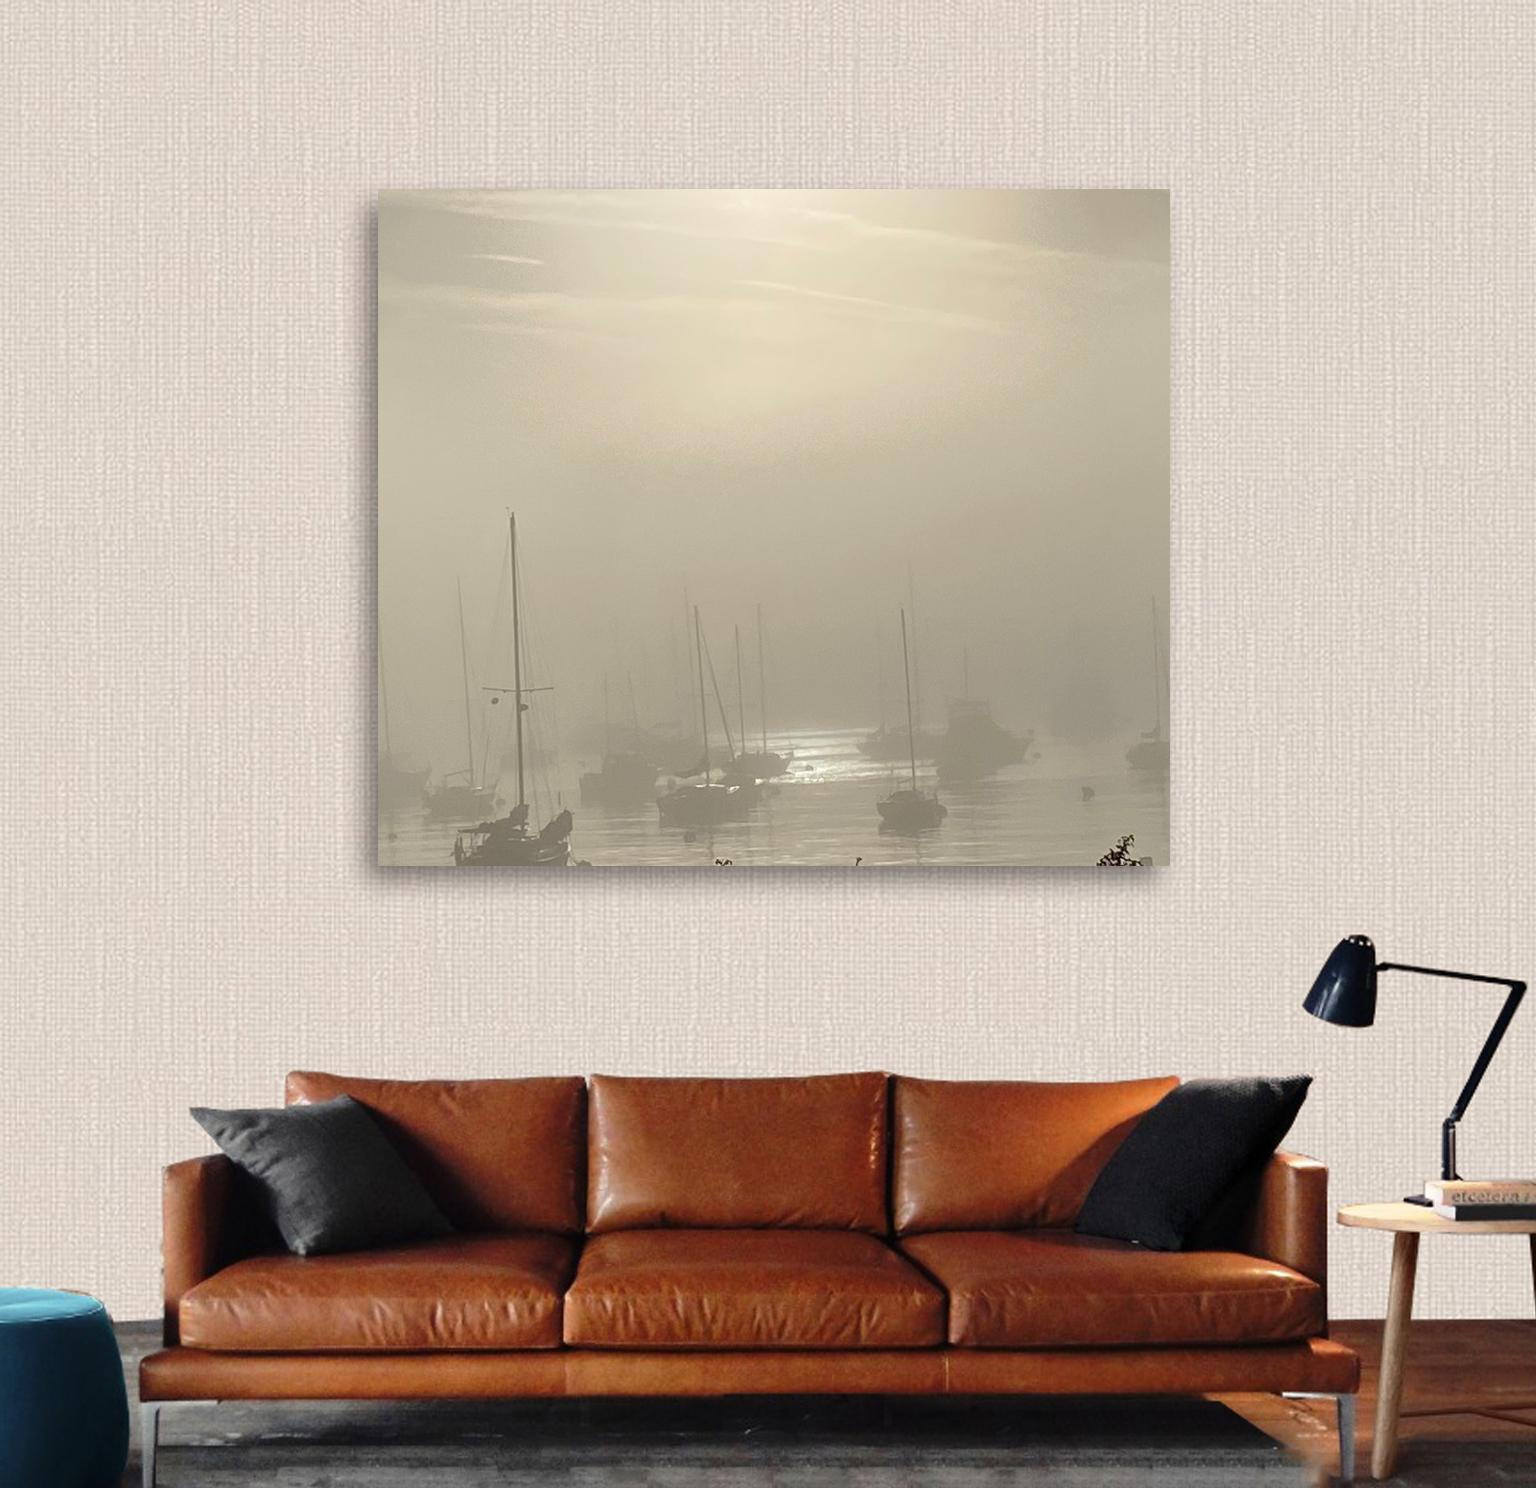 Boats In The Fog, farbige Fotografie  Ocean auf Leinwand Limitierte Auflage 1/10 – Photograph von O Devan